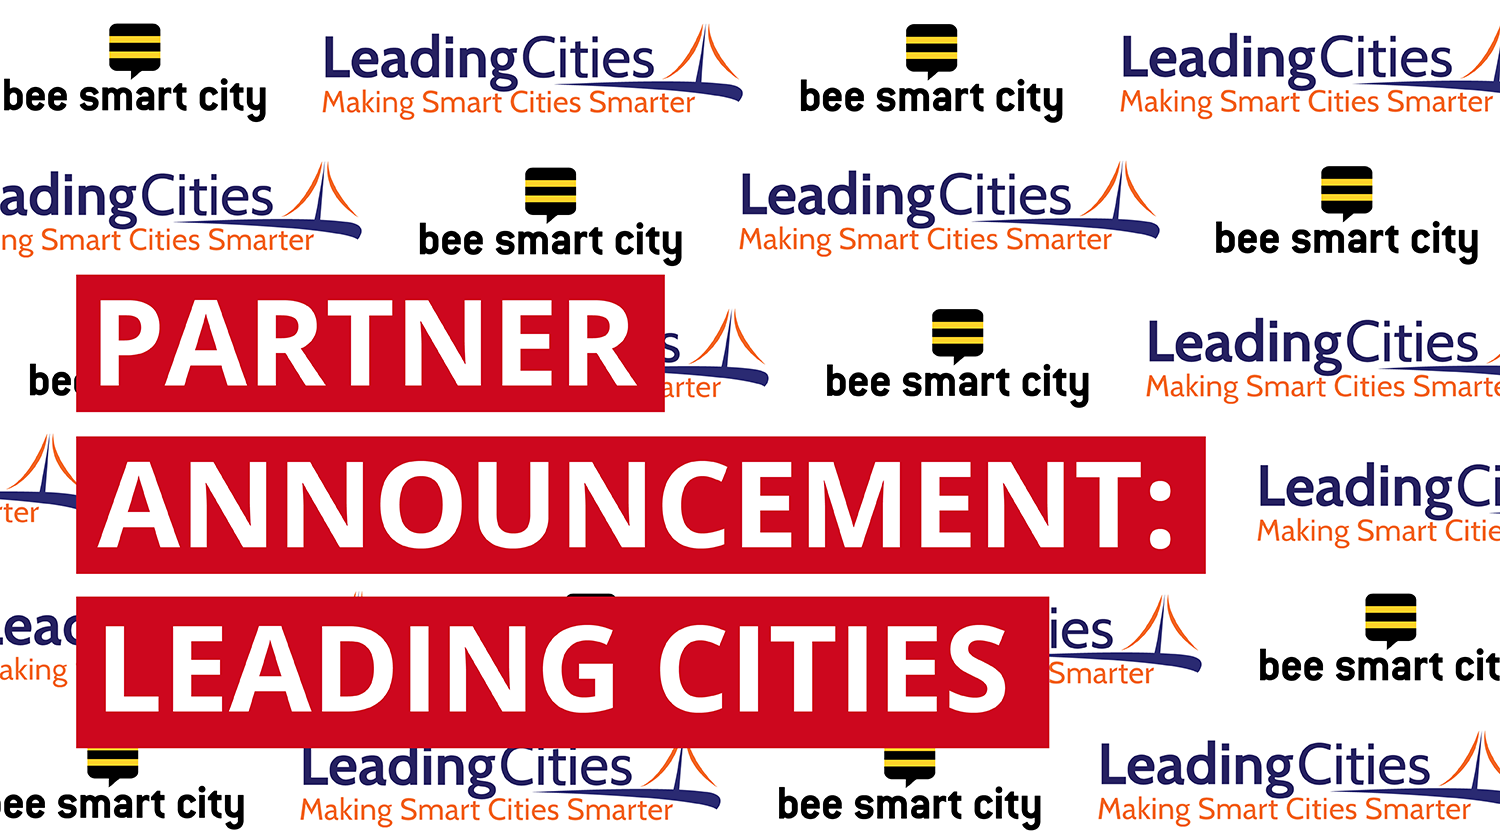 partner-announcement-leadingcities-blog.png